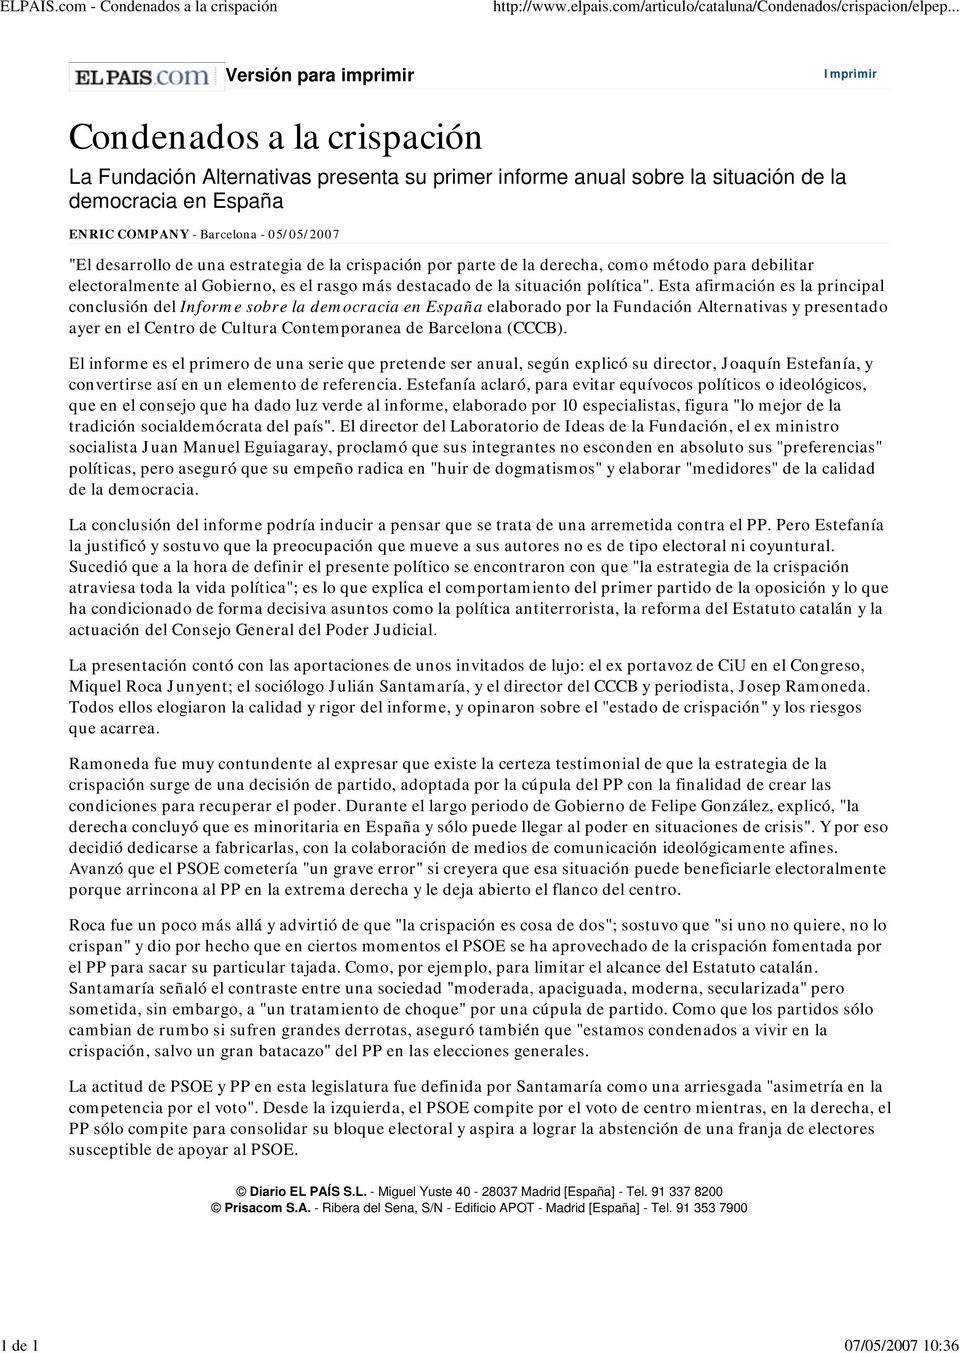 COMPANY - Barcelona - 05/05/2007 "El desarrollo de una estrategia de la crispación por parte de la derecha, como método para debilitar electoralmente al Gobierno, es el rasgo más destacado de la